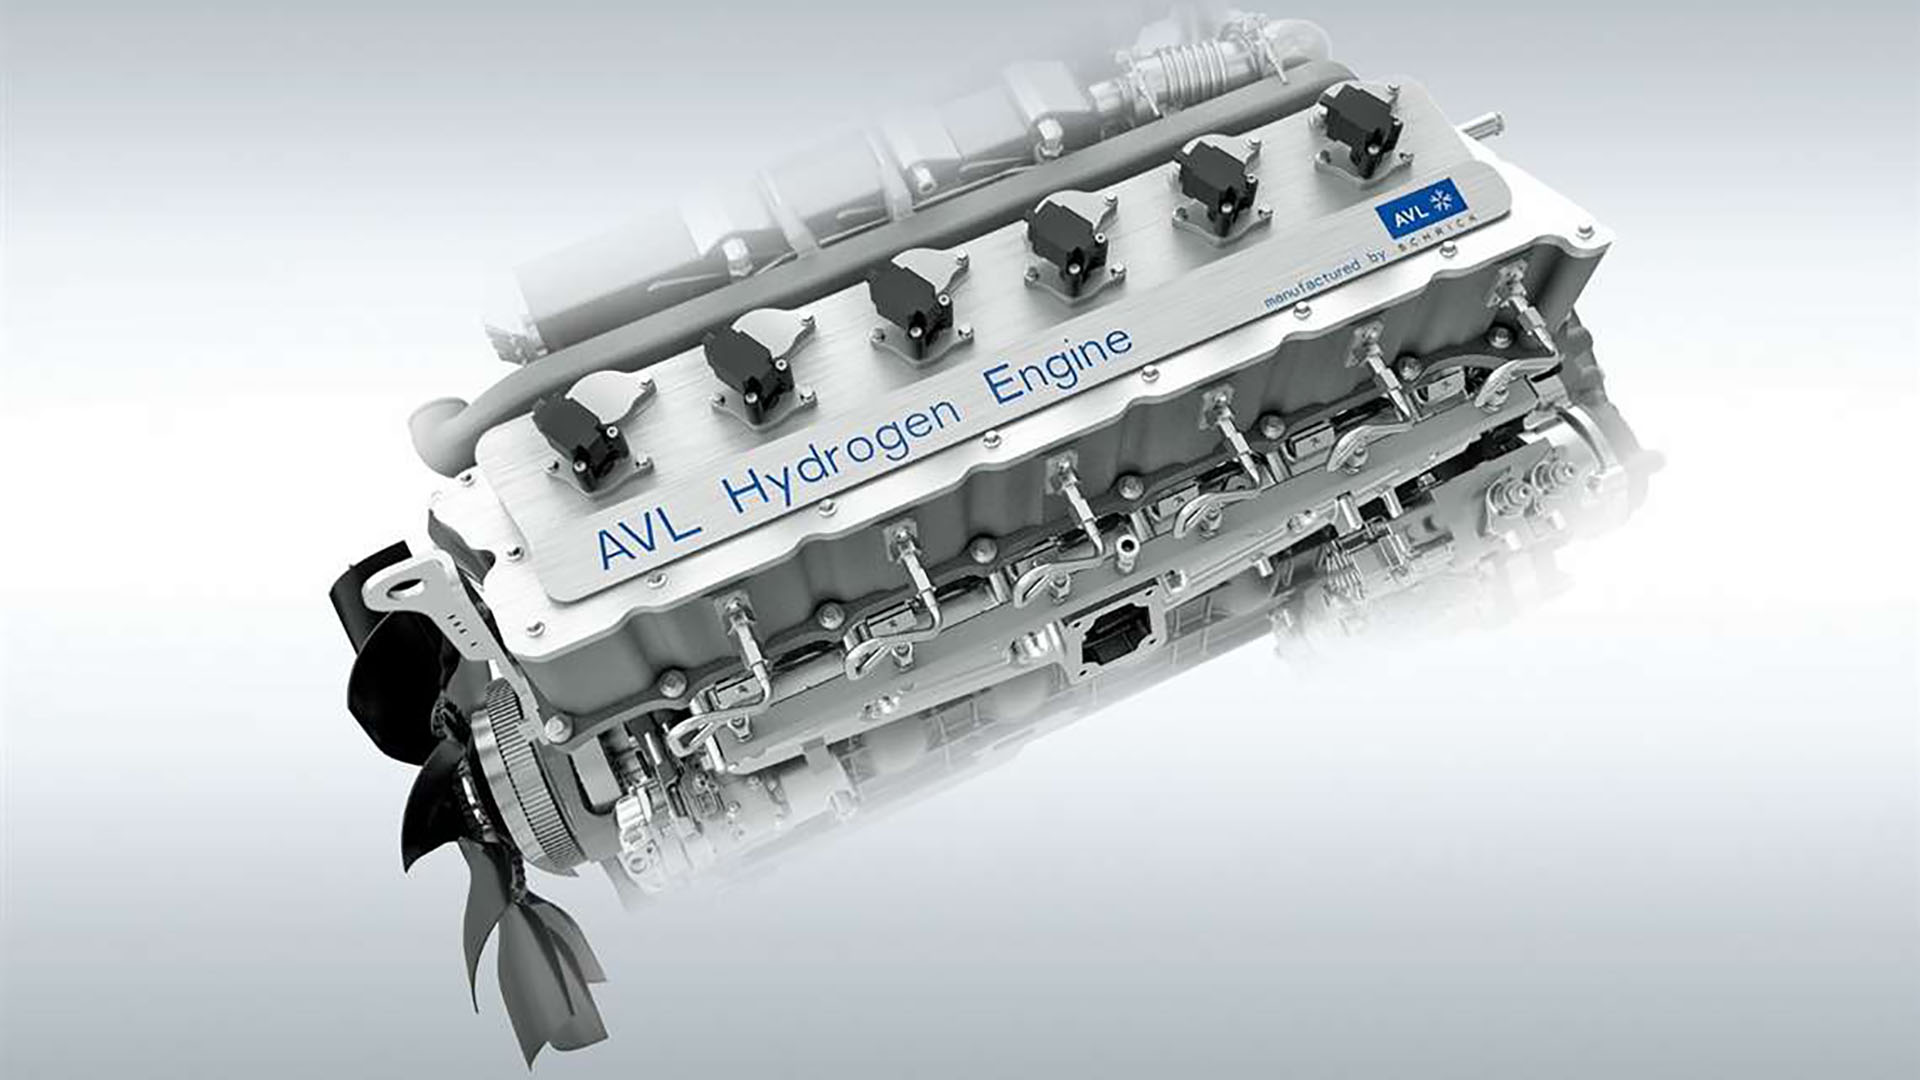 El motor es capaz de entregar unos 150 kW por litro, lo que equivale a unos 400 CV en un impulsor como el que han desarrollado, de 2000 cm3